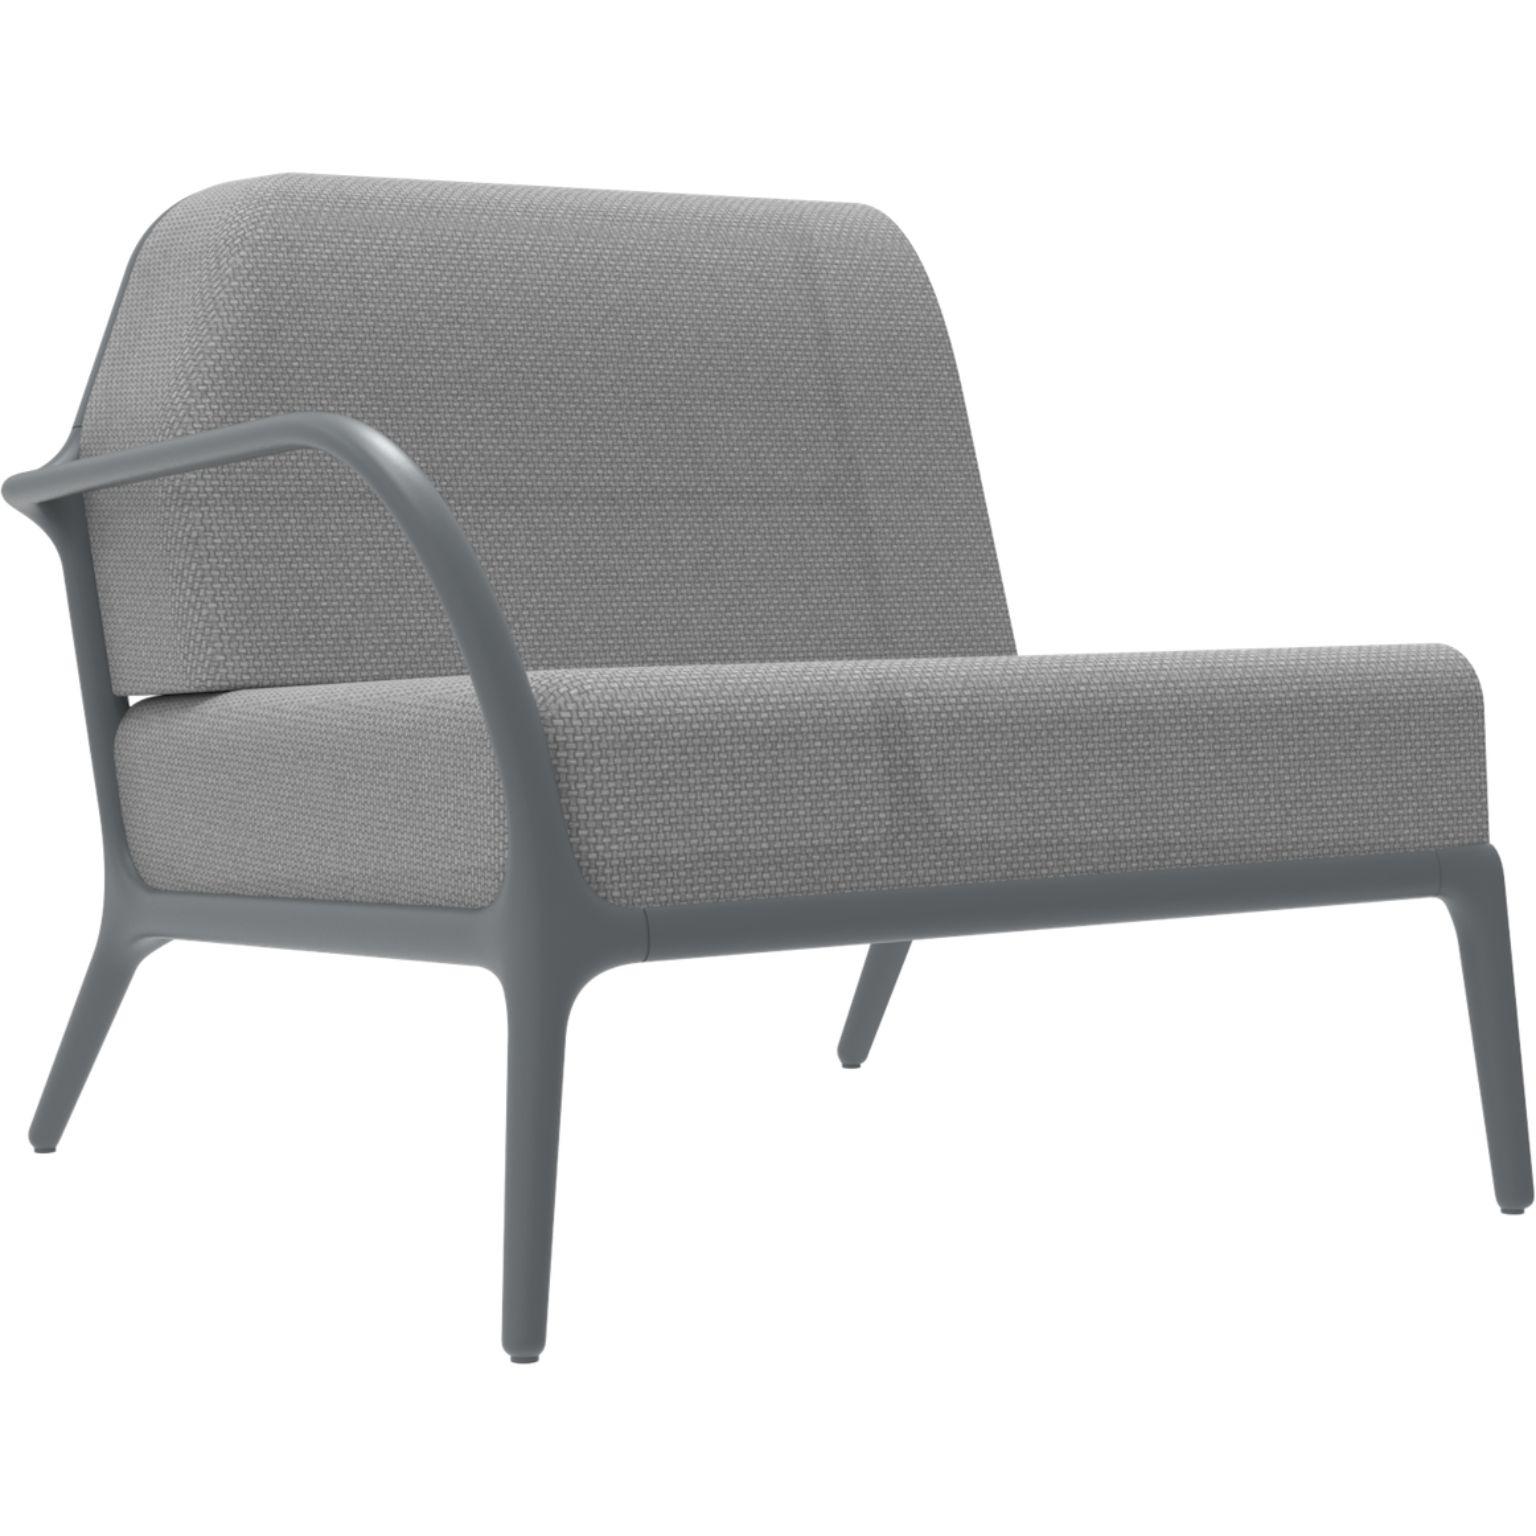 Xaloc Right 90 graues modulares Sofa von Mowee.
Abmessungen: T100 x B90 x H81 cm (Sitzhöhe 42 cm)
MATERIAL: Aluminium, Textil
Gewicht: 25 kg
Auch in verschiedenen Farben und Ausführungen erhältlich.

 Xaloc synthetisiert die Linien der